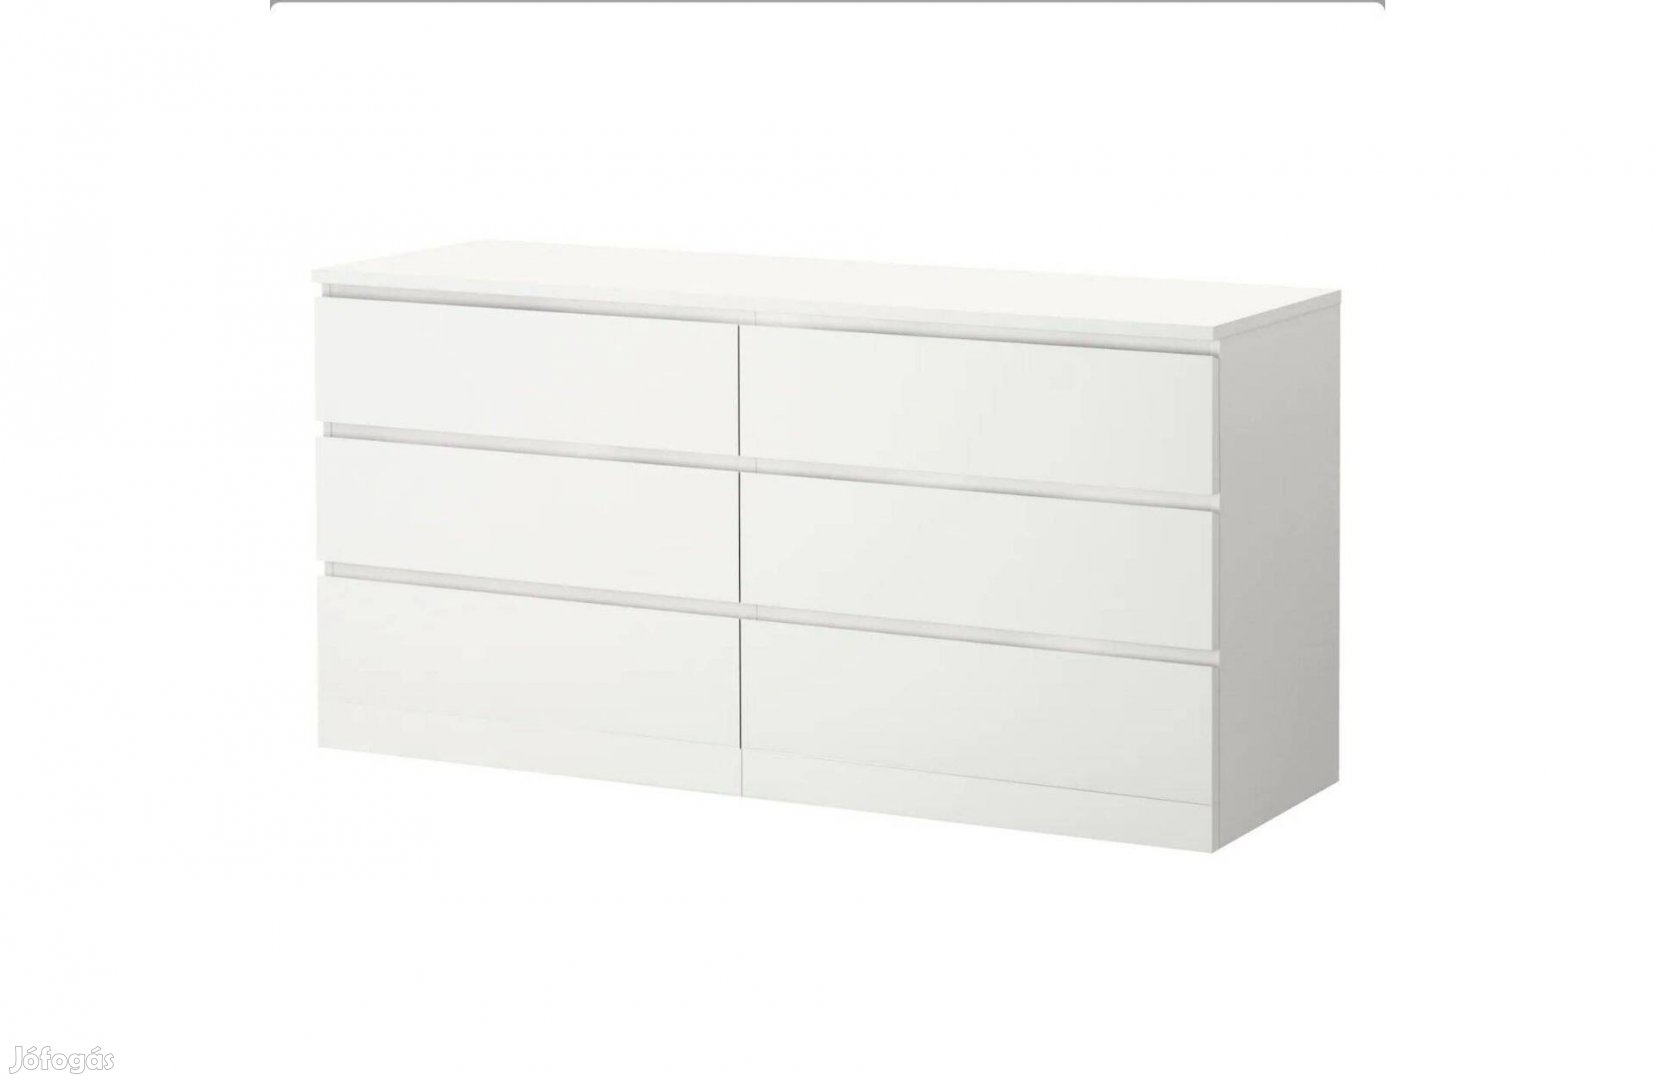 Malm 6-fiókos szekrény, fehér, 160x78 cm